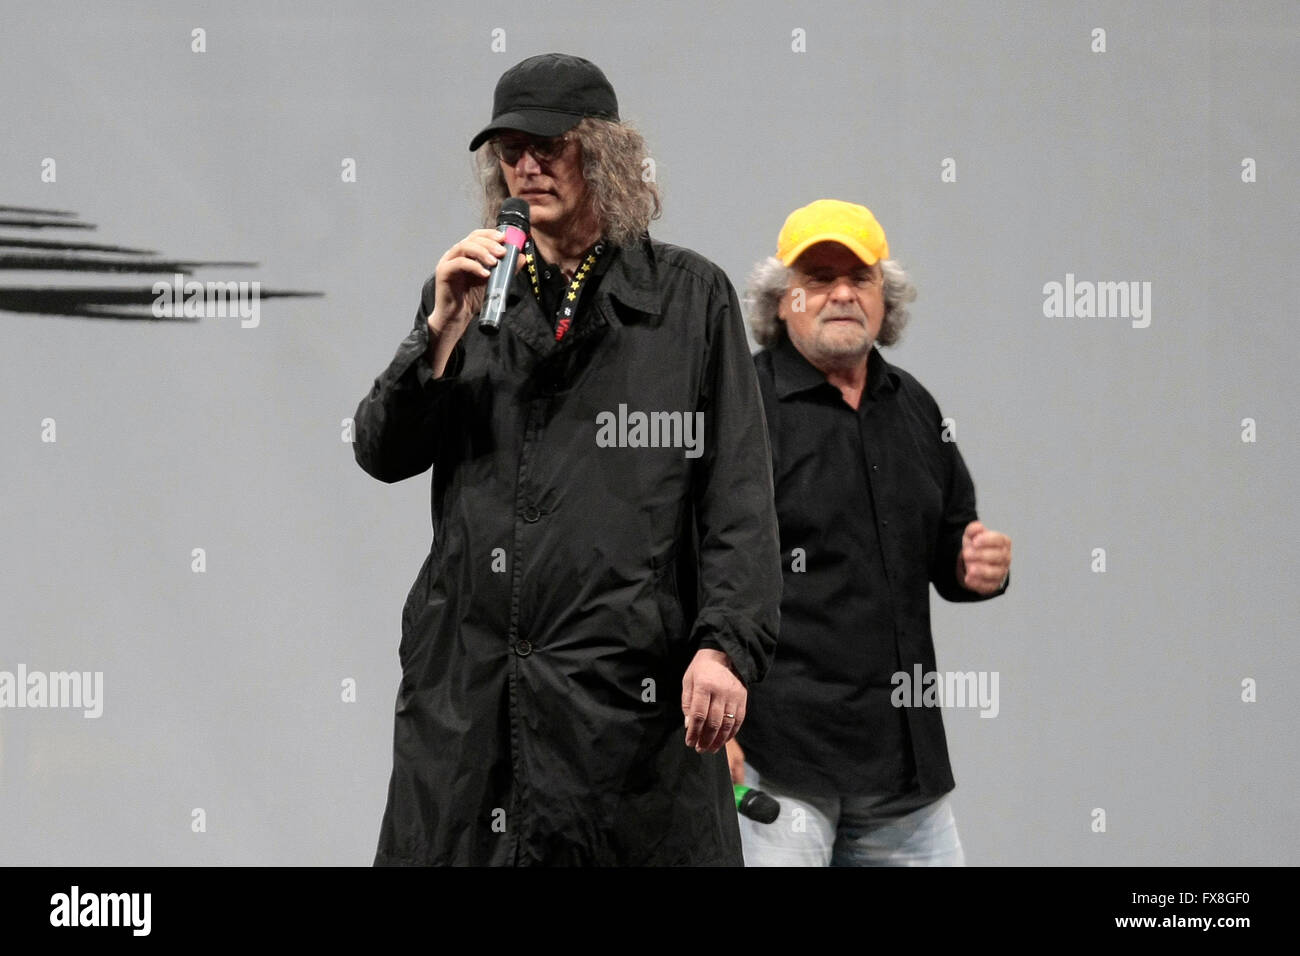 Beppe Grillo e Gianroberto Casaleggio  Roma 23rd 2014 Closing of the politic campaign of m5s, movement 5 stars Stock Photo